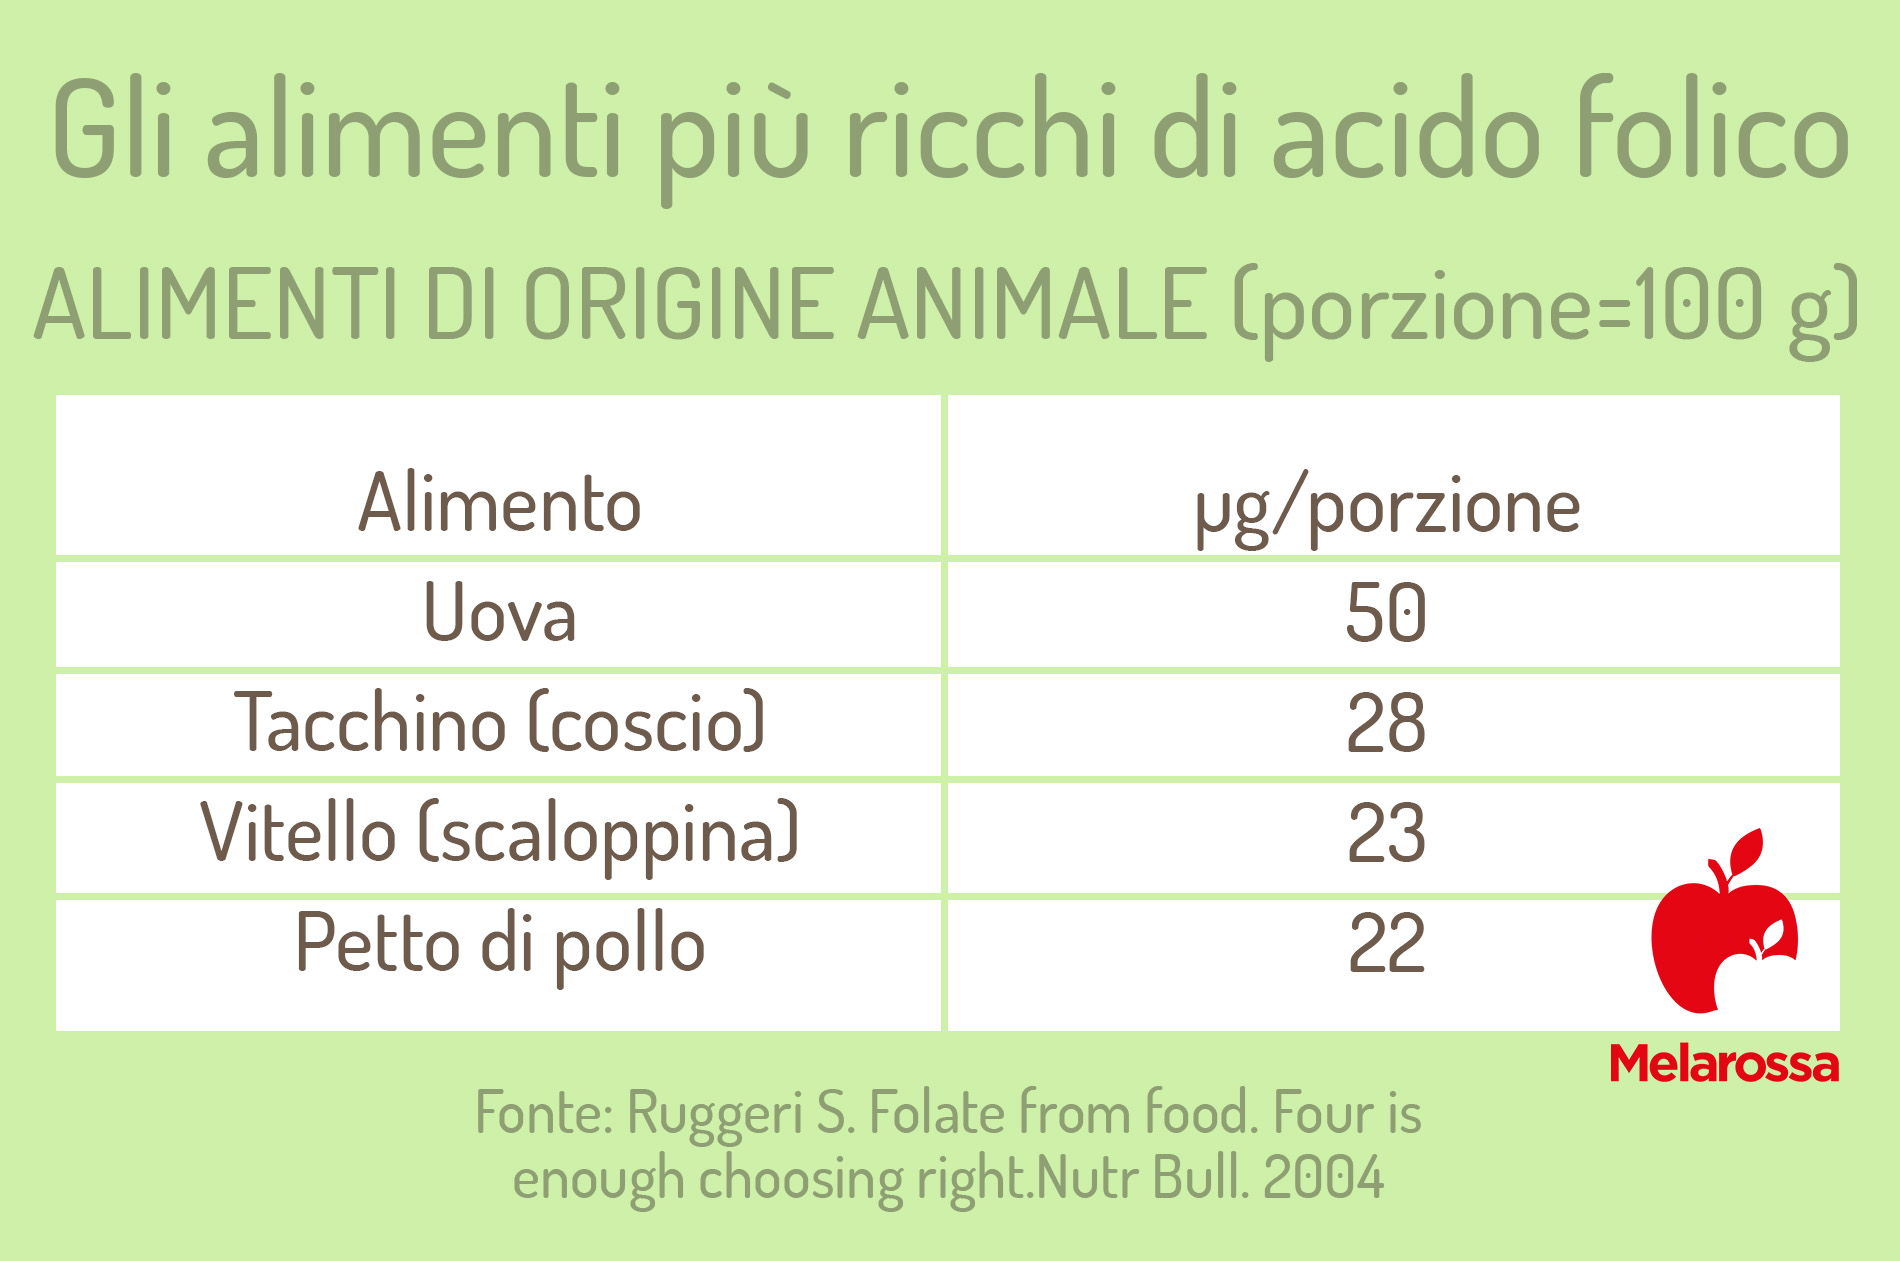 alimenti ricchi di acido folico: carne e uova 